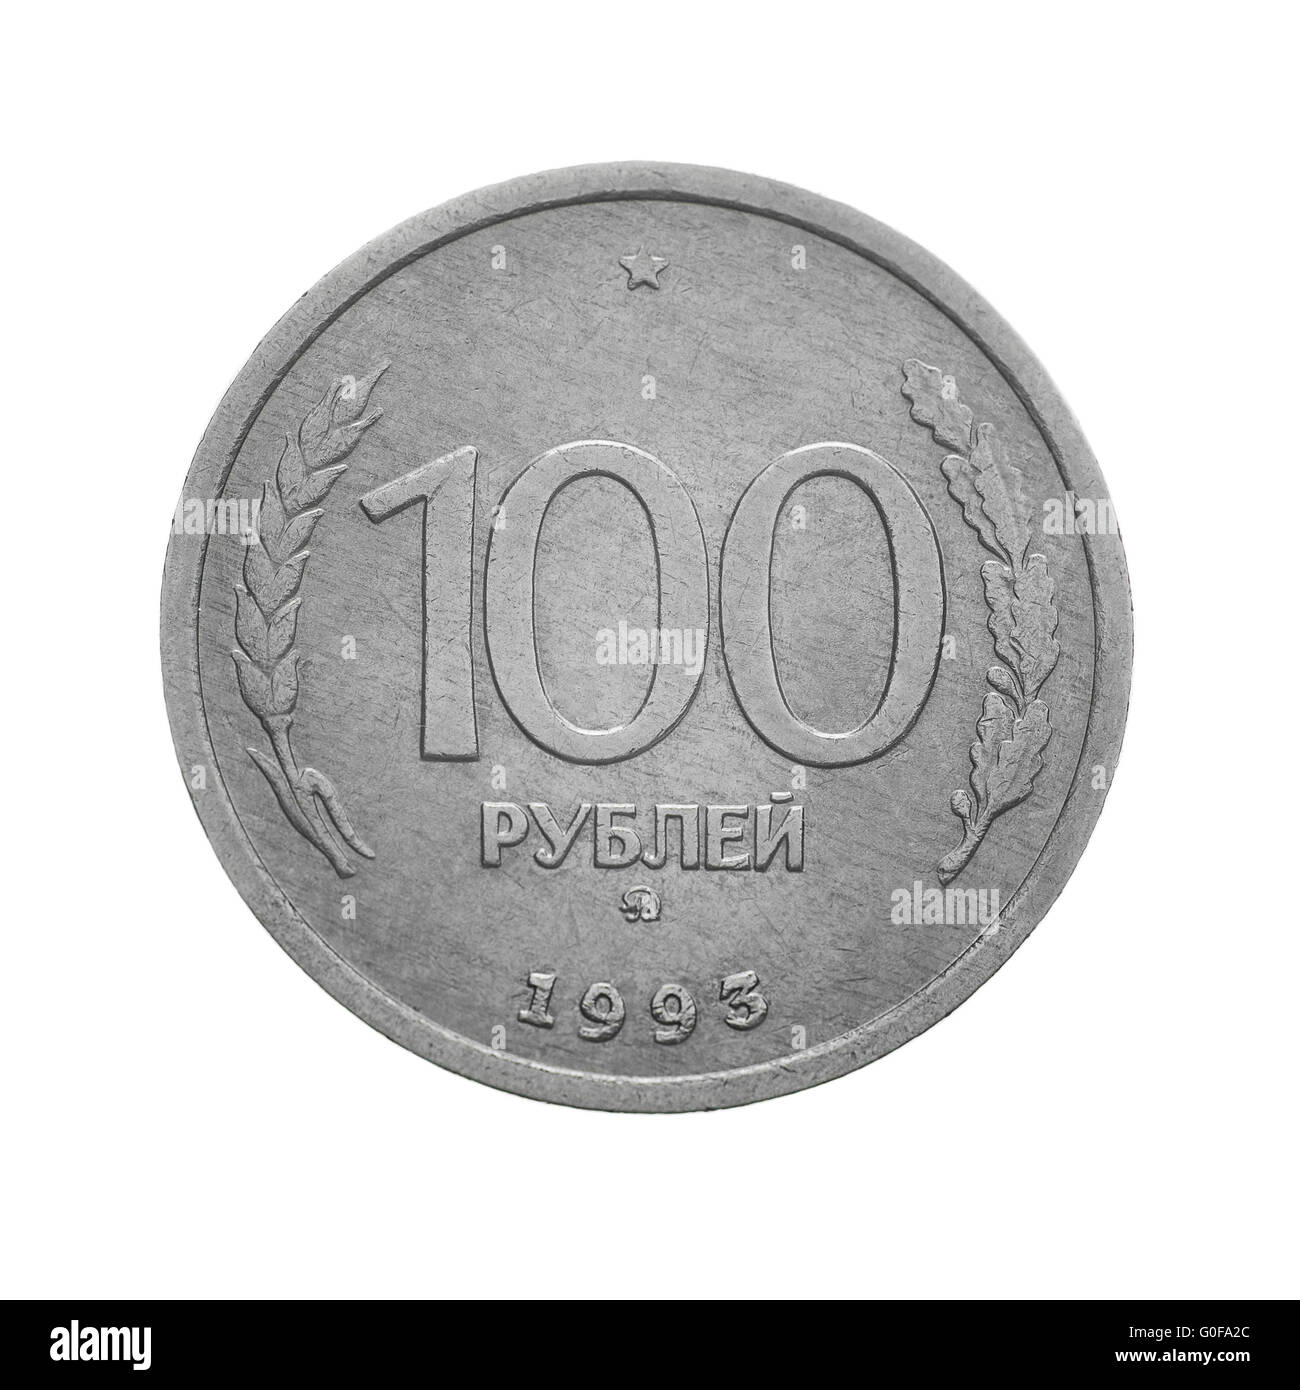 35 российских рублей. Rus 100 rubl. Бесконечно рублей.